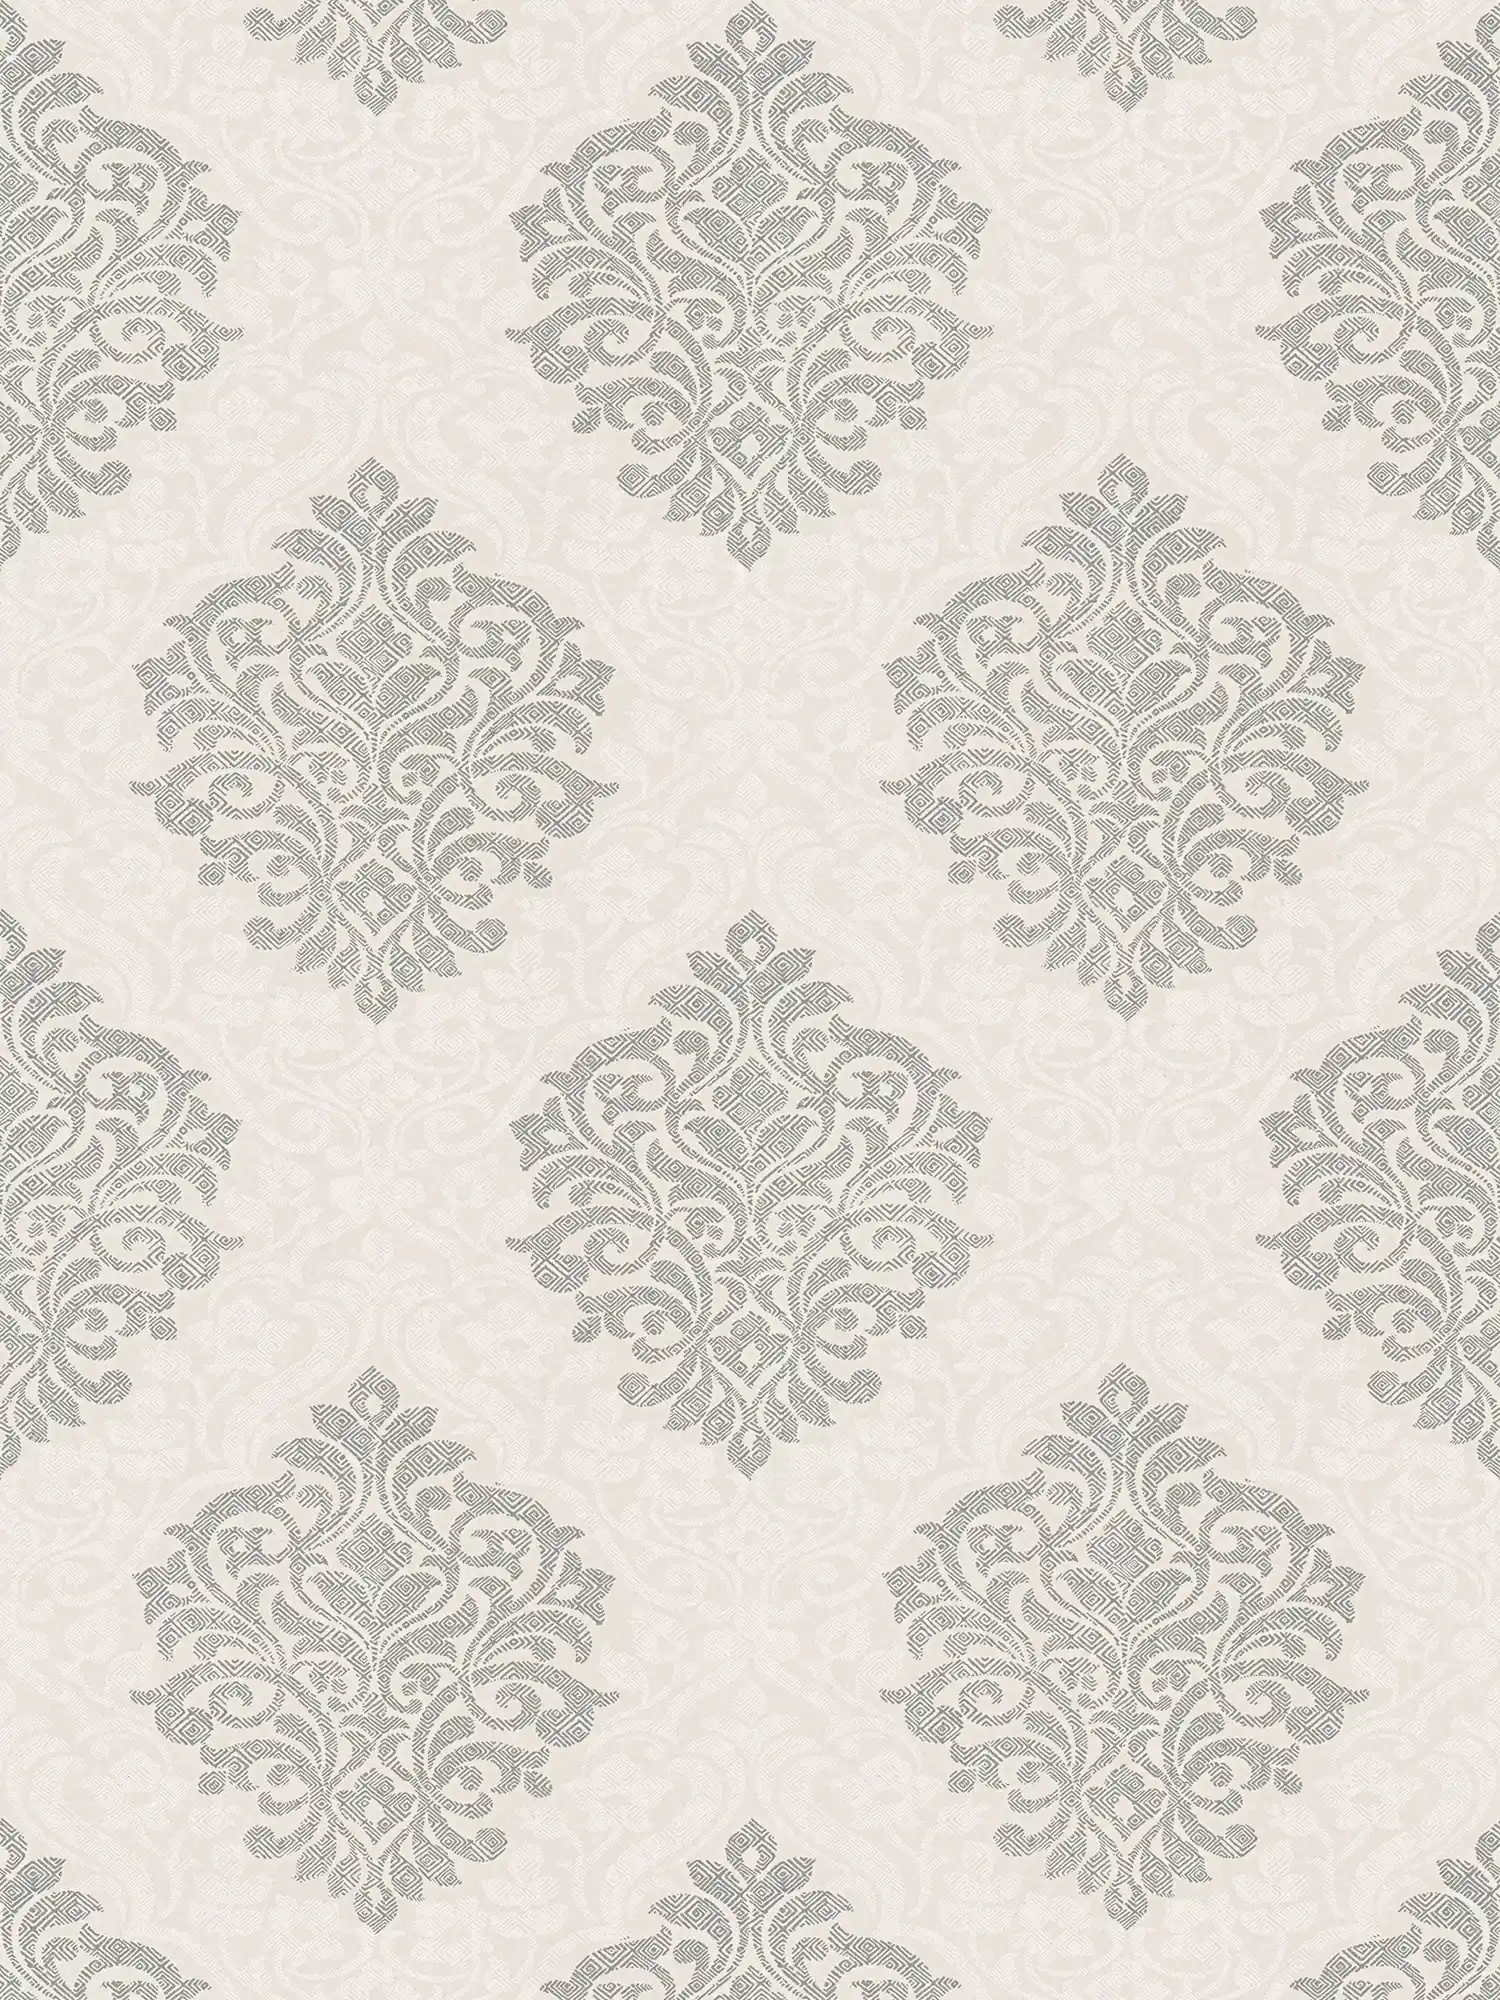 Floral ornamental wallpaper diamond pattern in ethnic style - beige, silver
